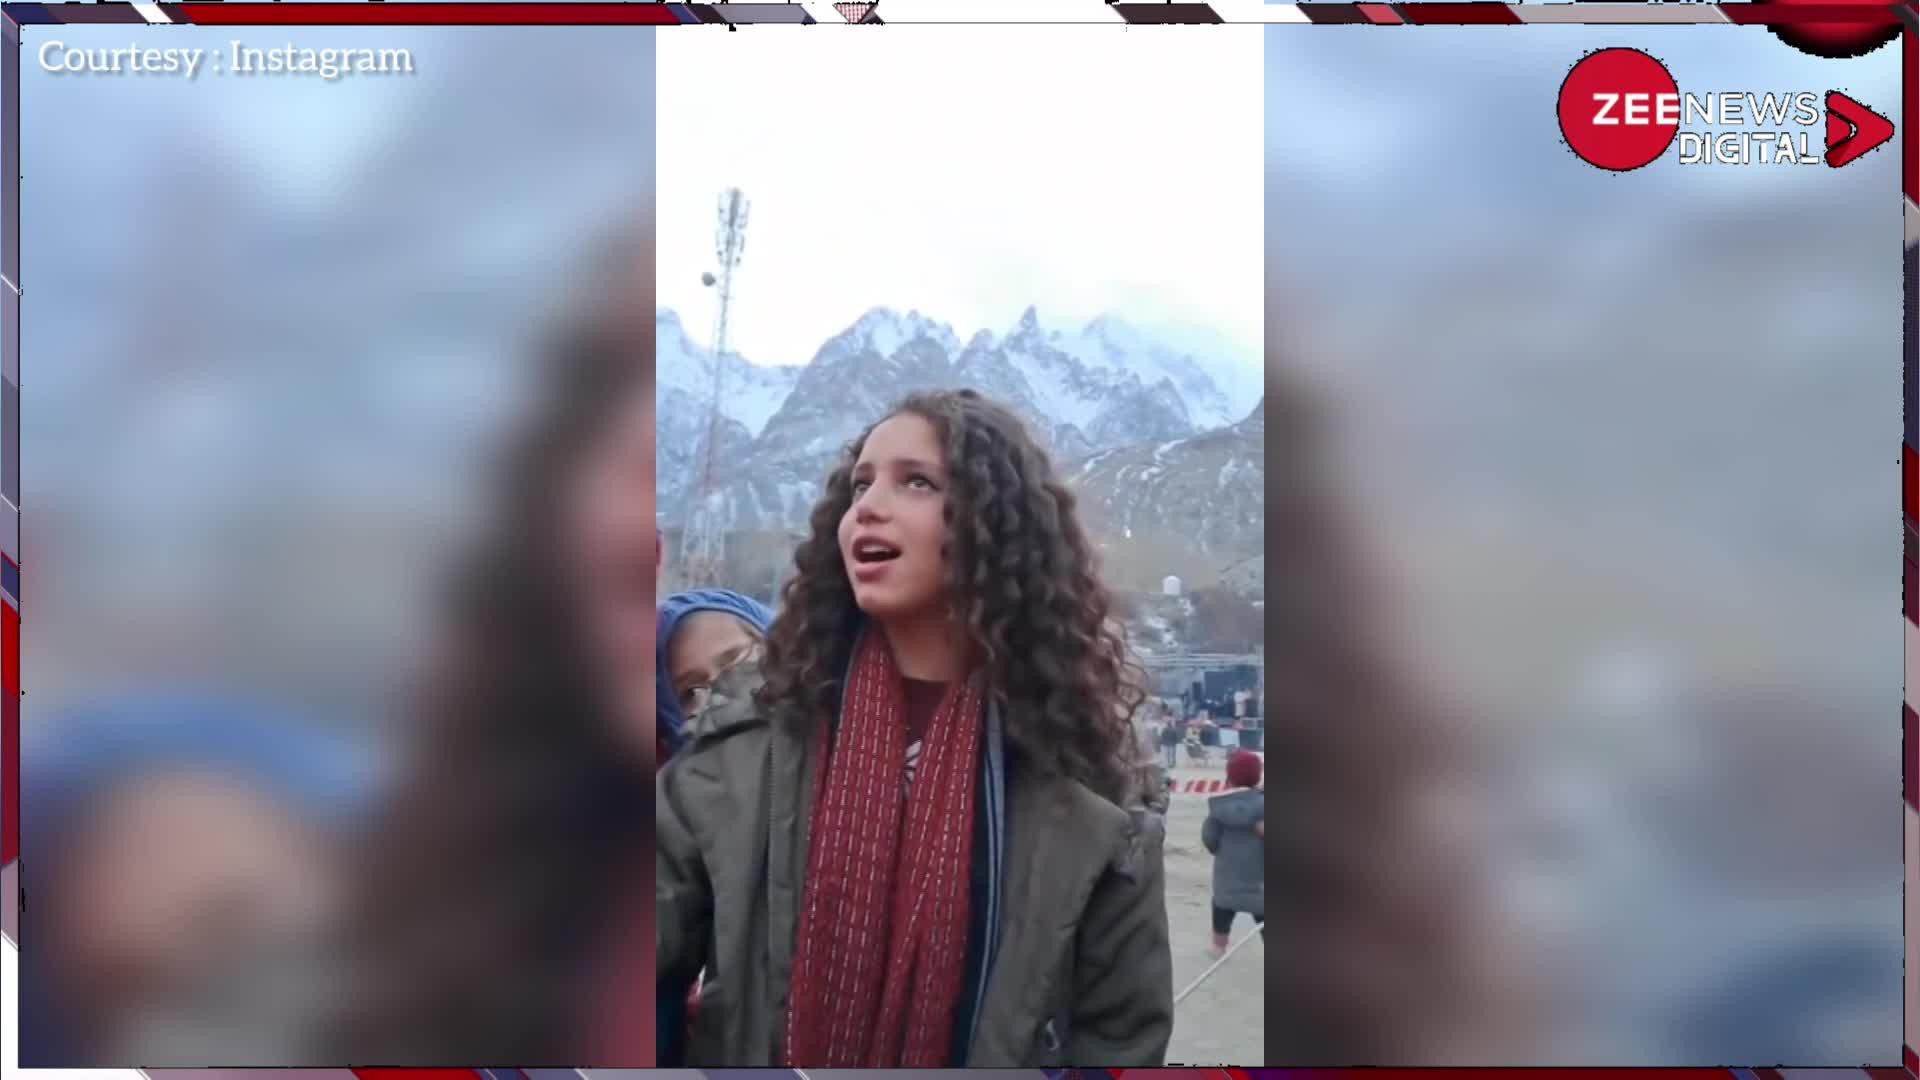 गिलगित-बाल्टिस्तान की लड़की ने गाया 'इन आंखों की मस्ती के'... सुनकर इंडियंस बने दीवाने, शेयर करने लगे वीडियो